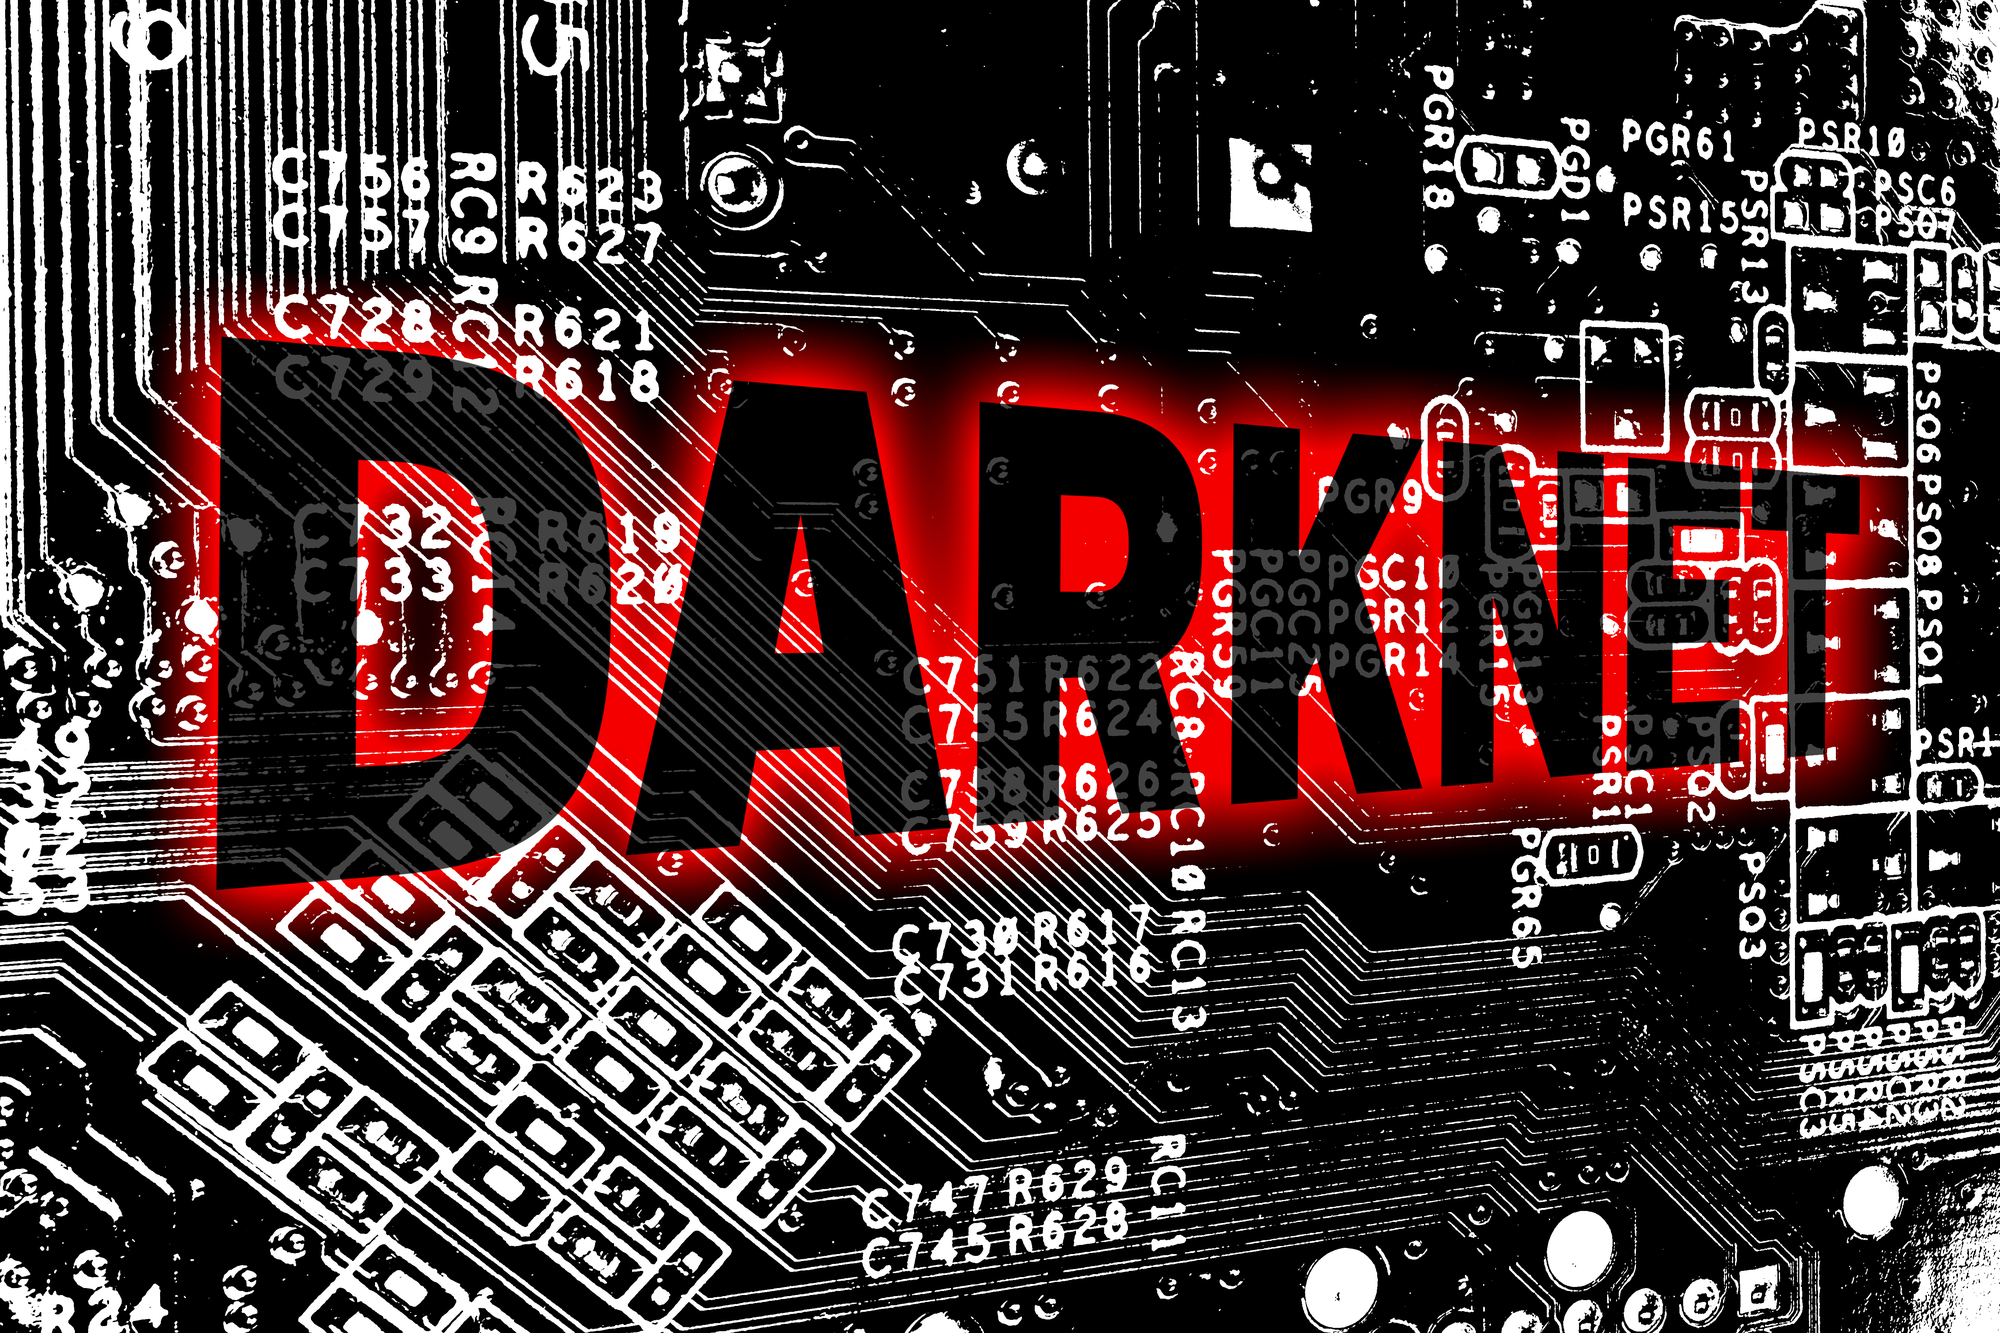 Das Wort "Darknet" auf einer Platine